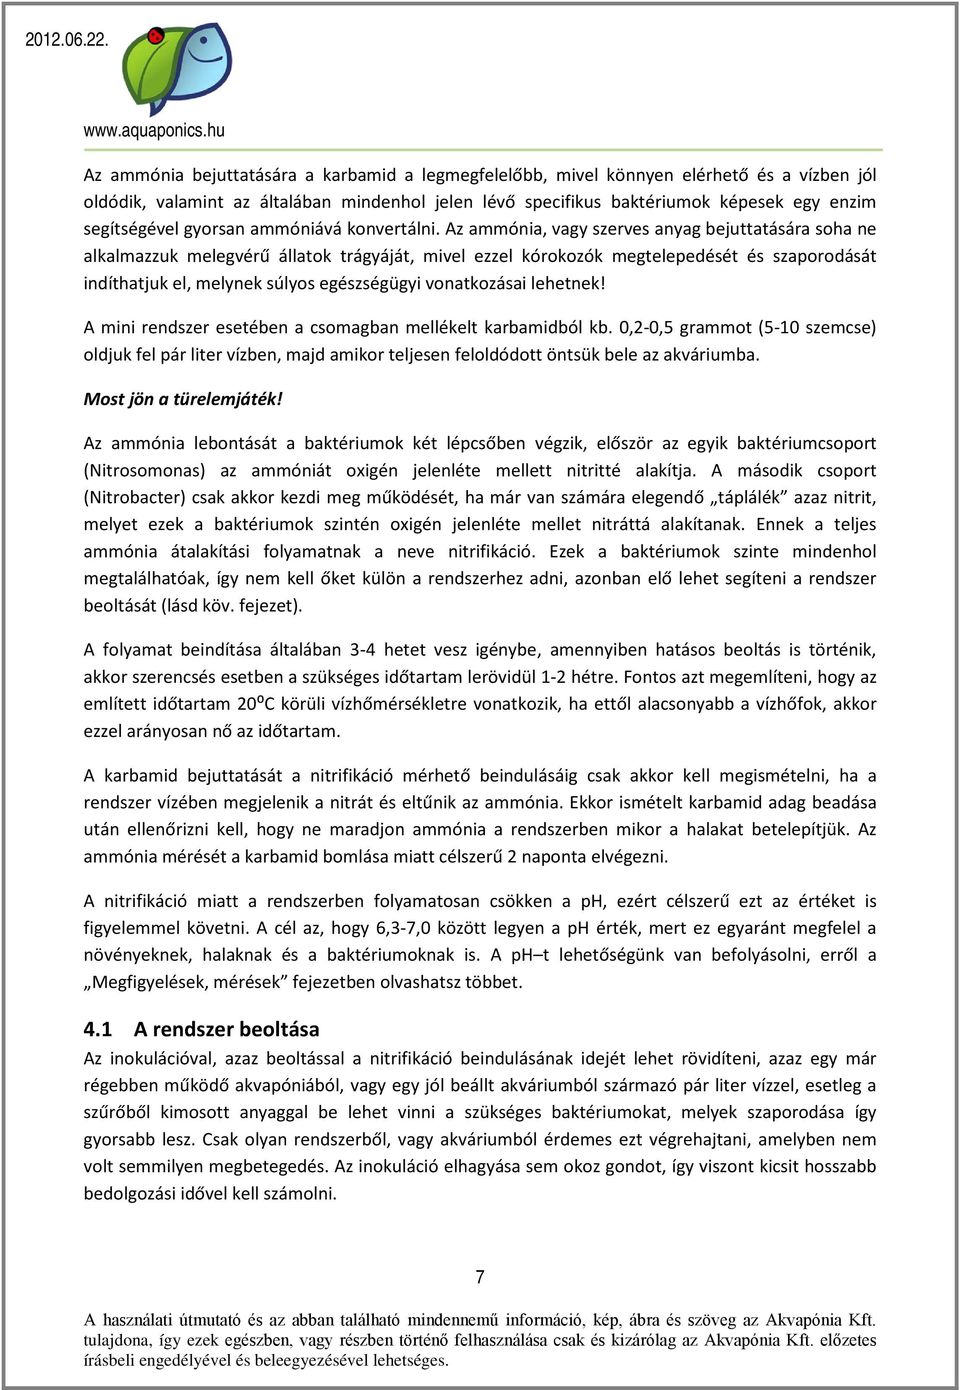 A mini akvapónia rendszer - PDF Ingyenes letöltés